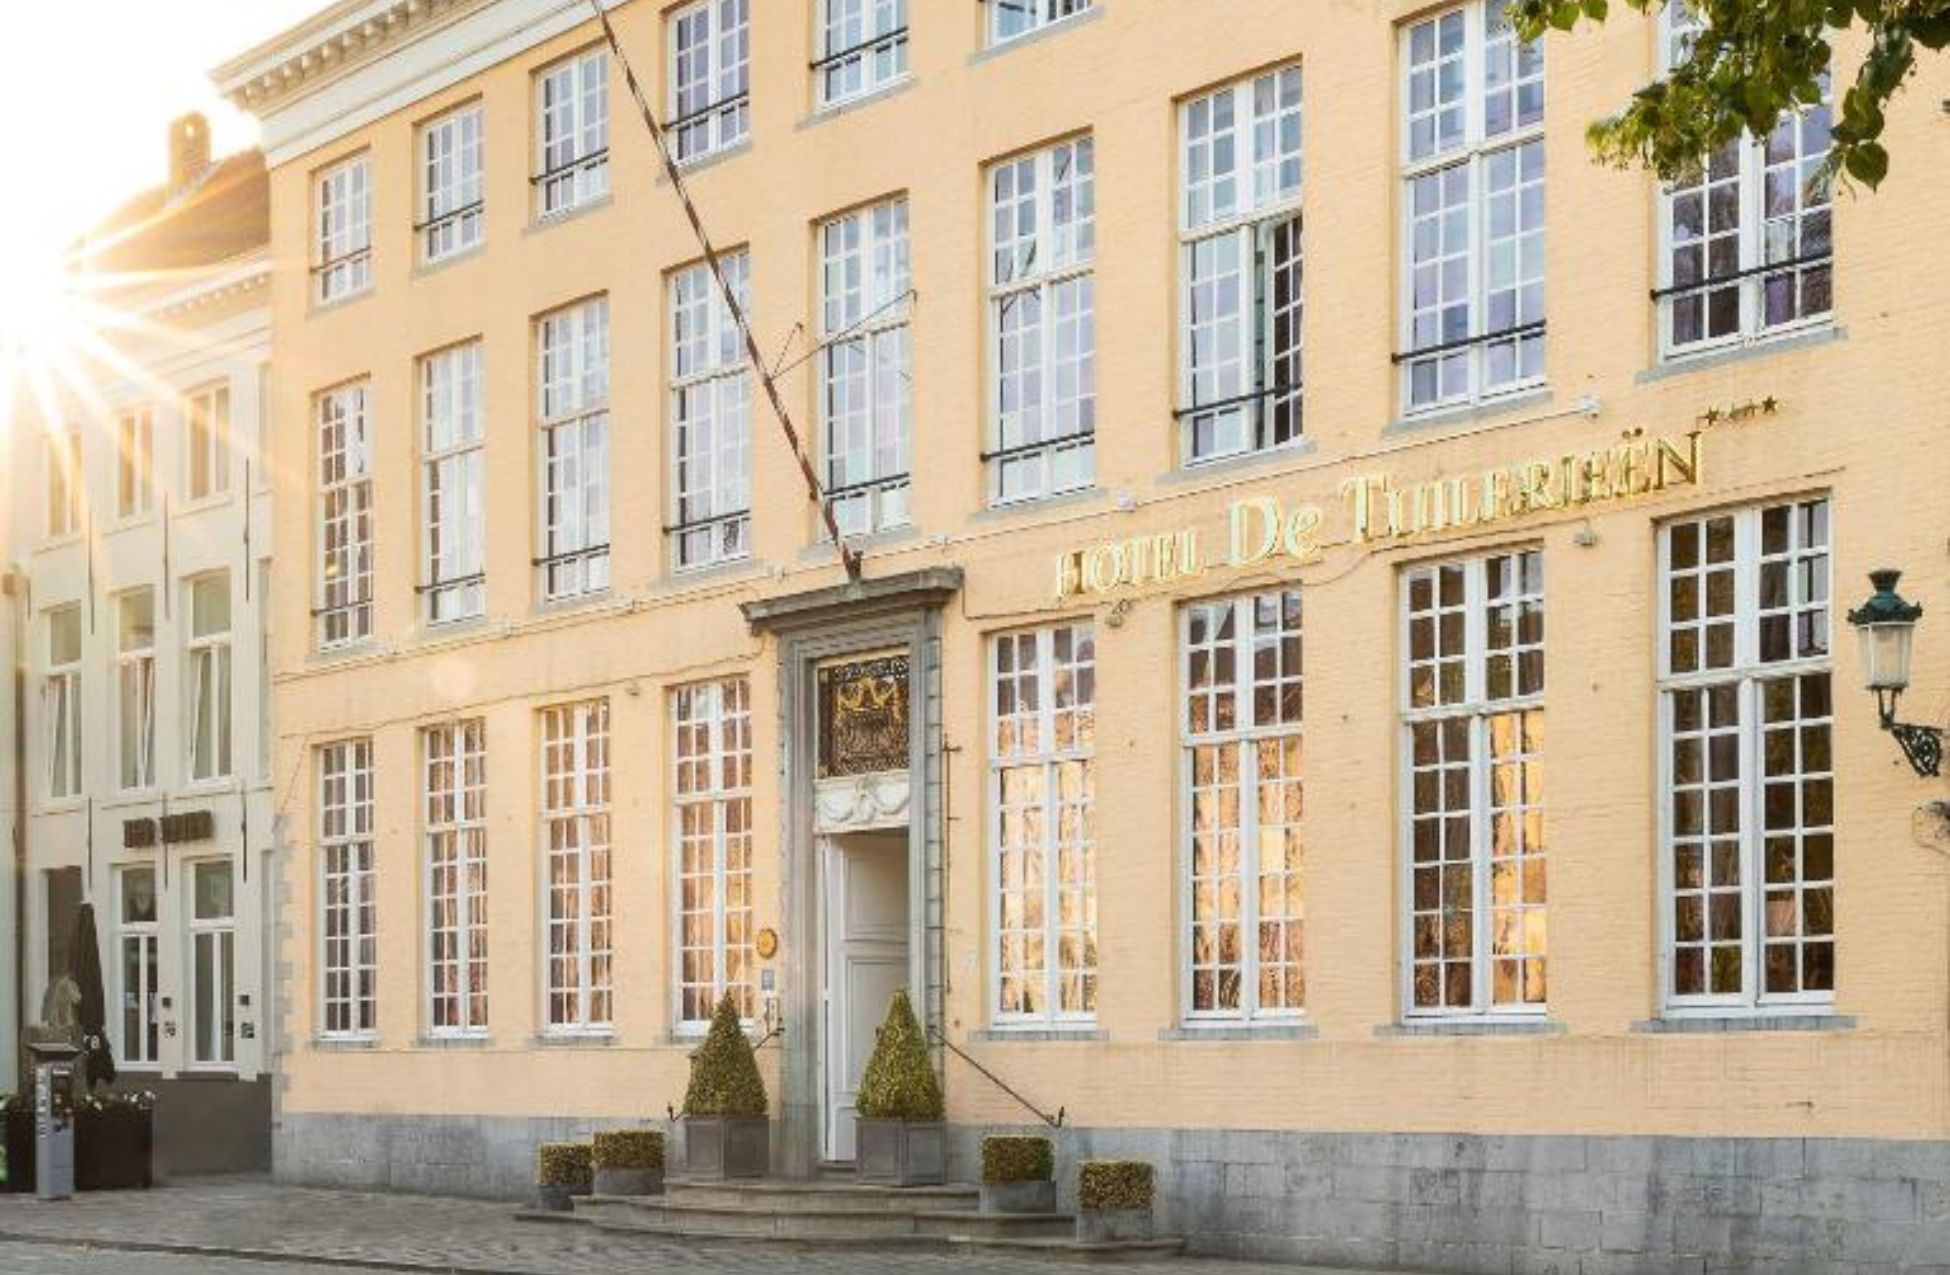 De Tuilerieën - Best Hotels In Bruges